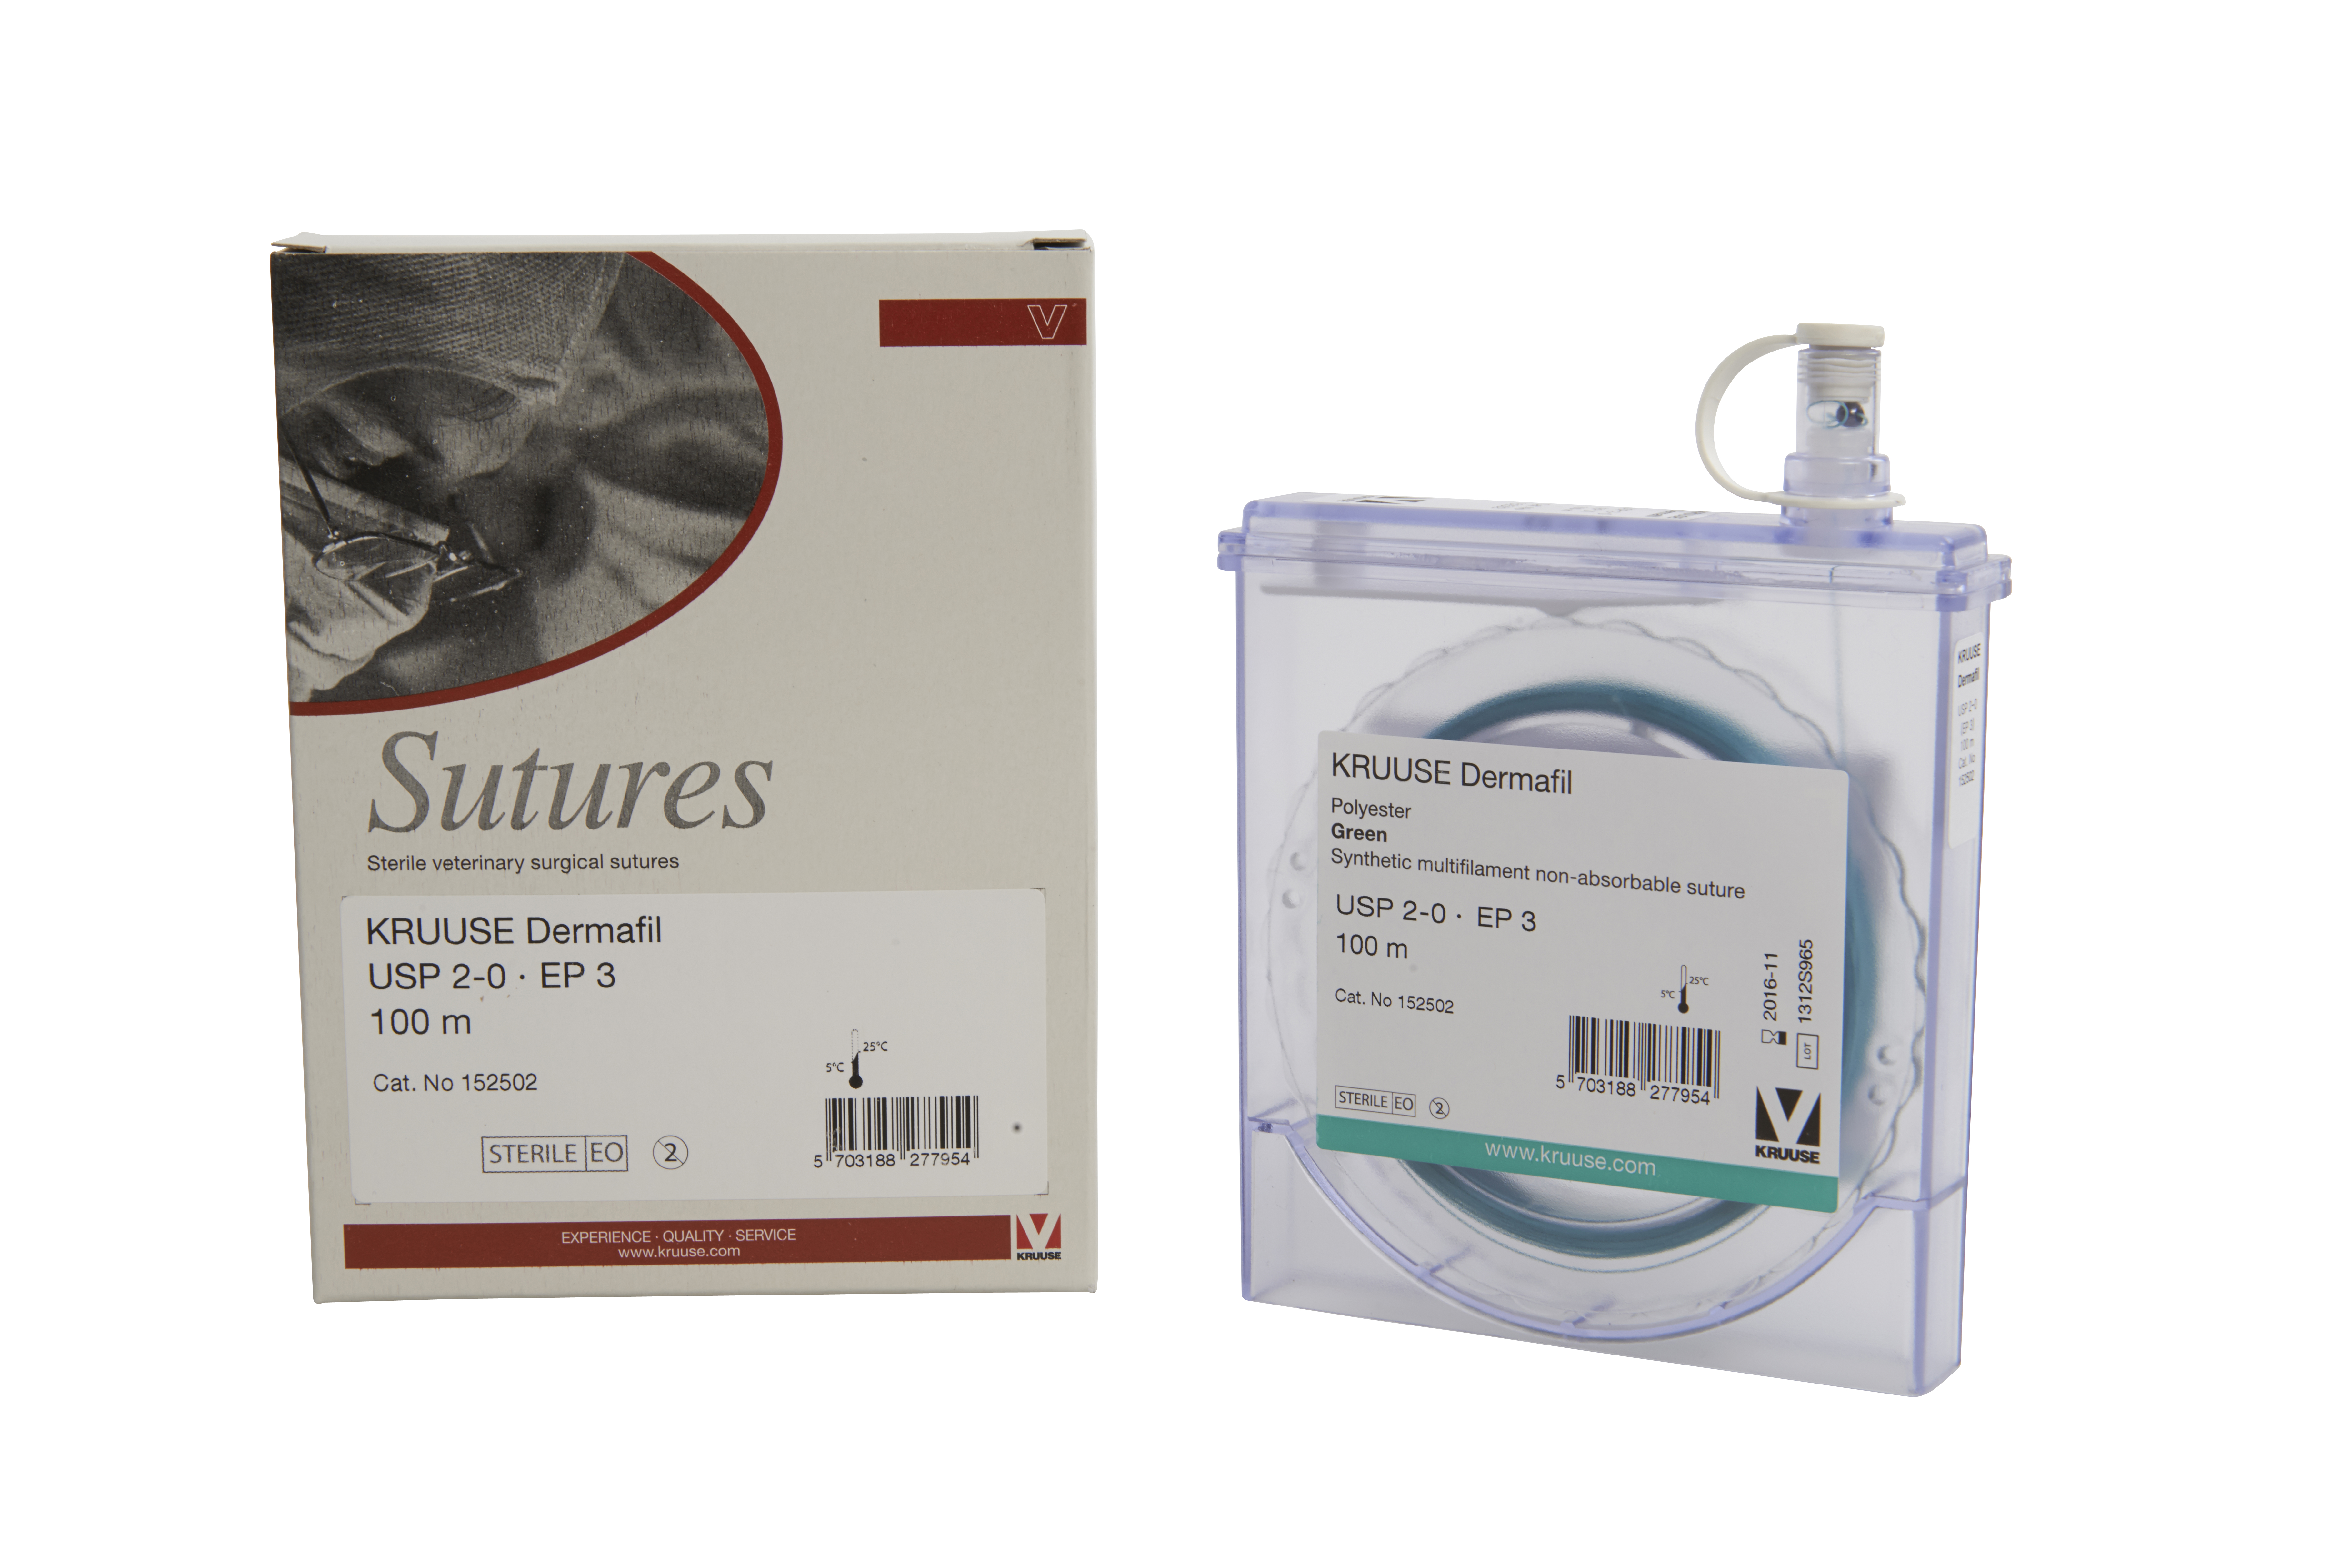 KRUUSE Dermafil suture, USP 2-0, EP 3, 100m